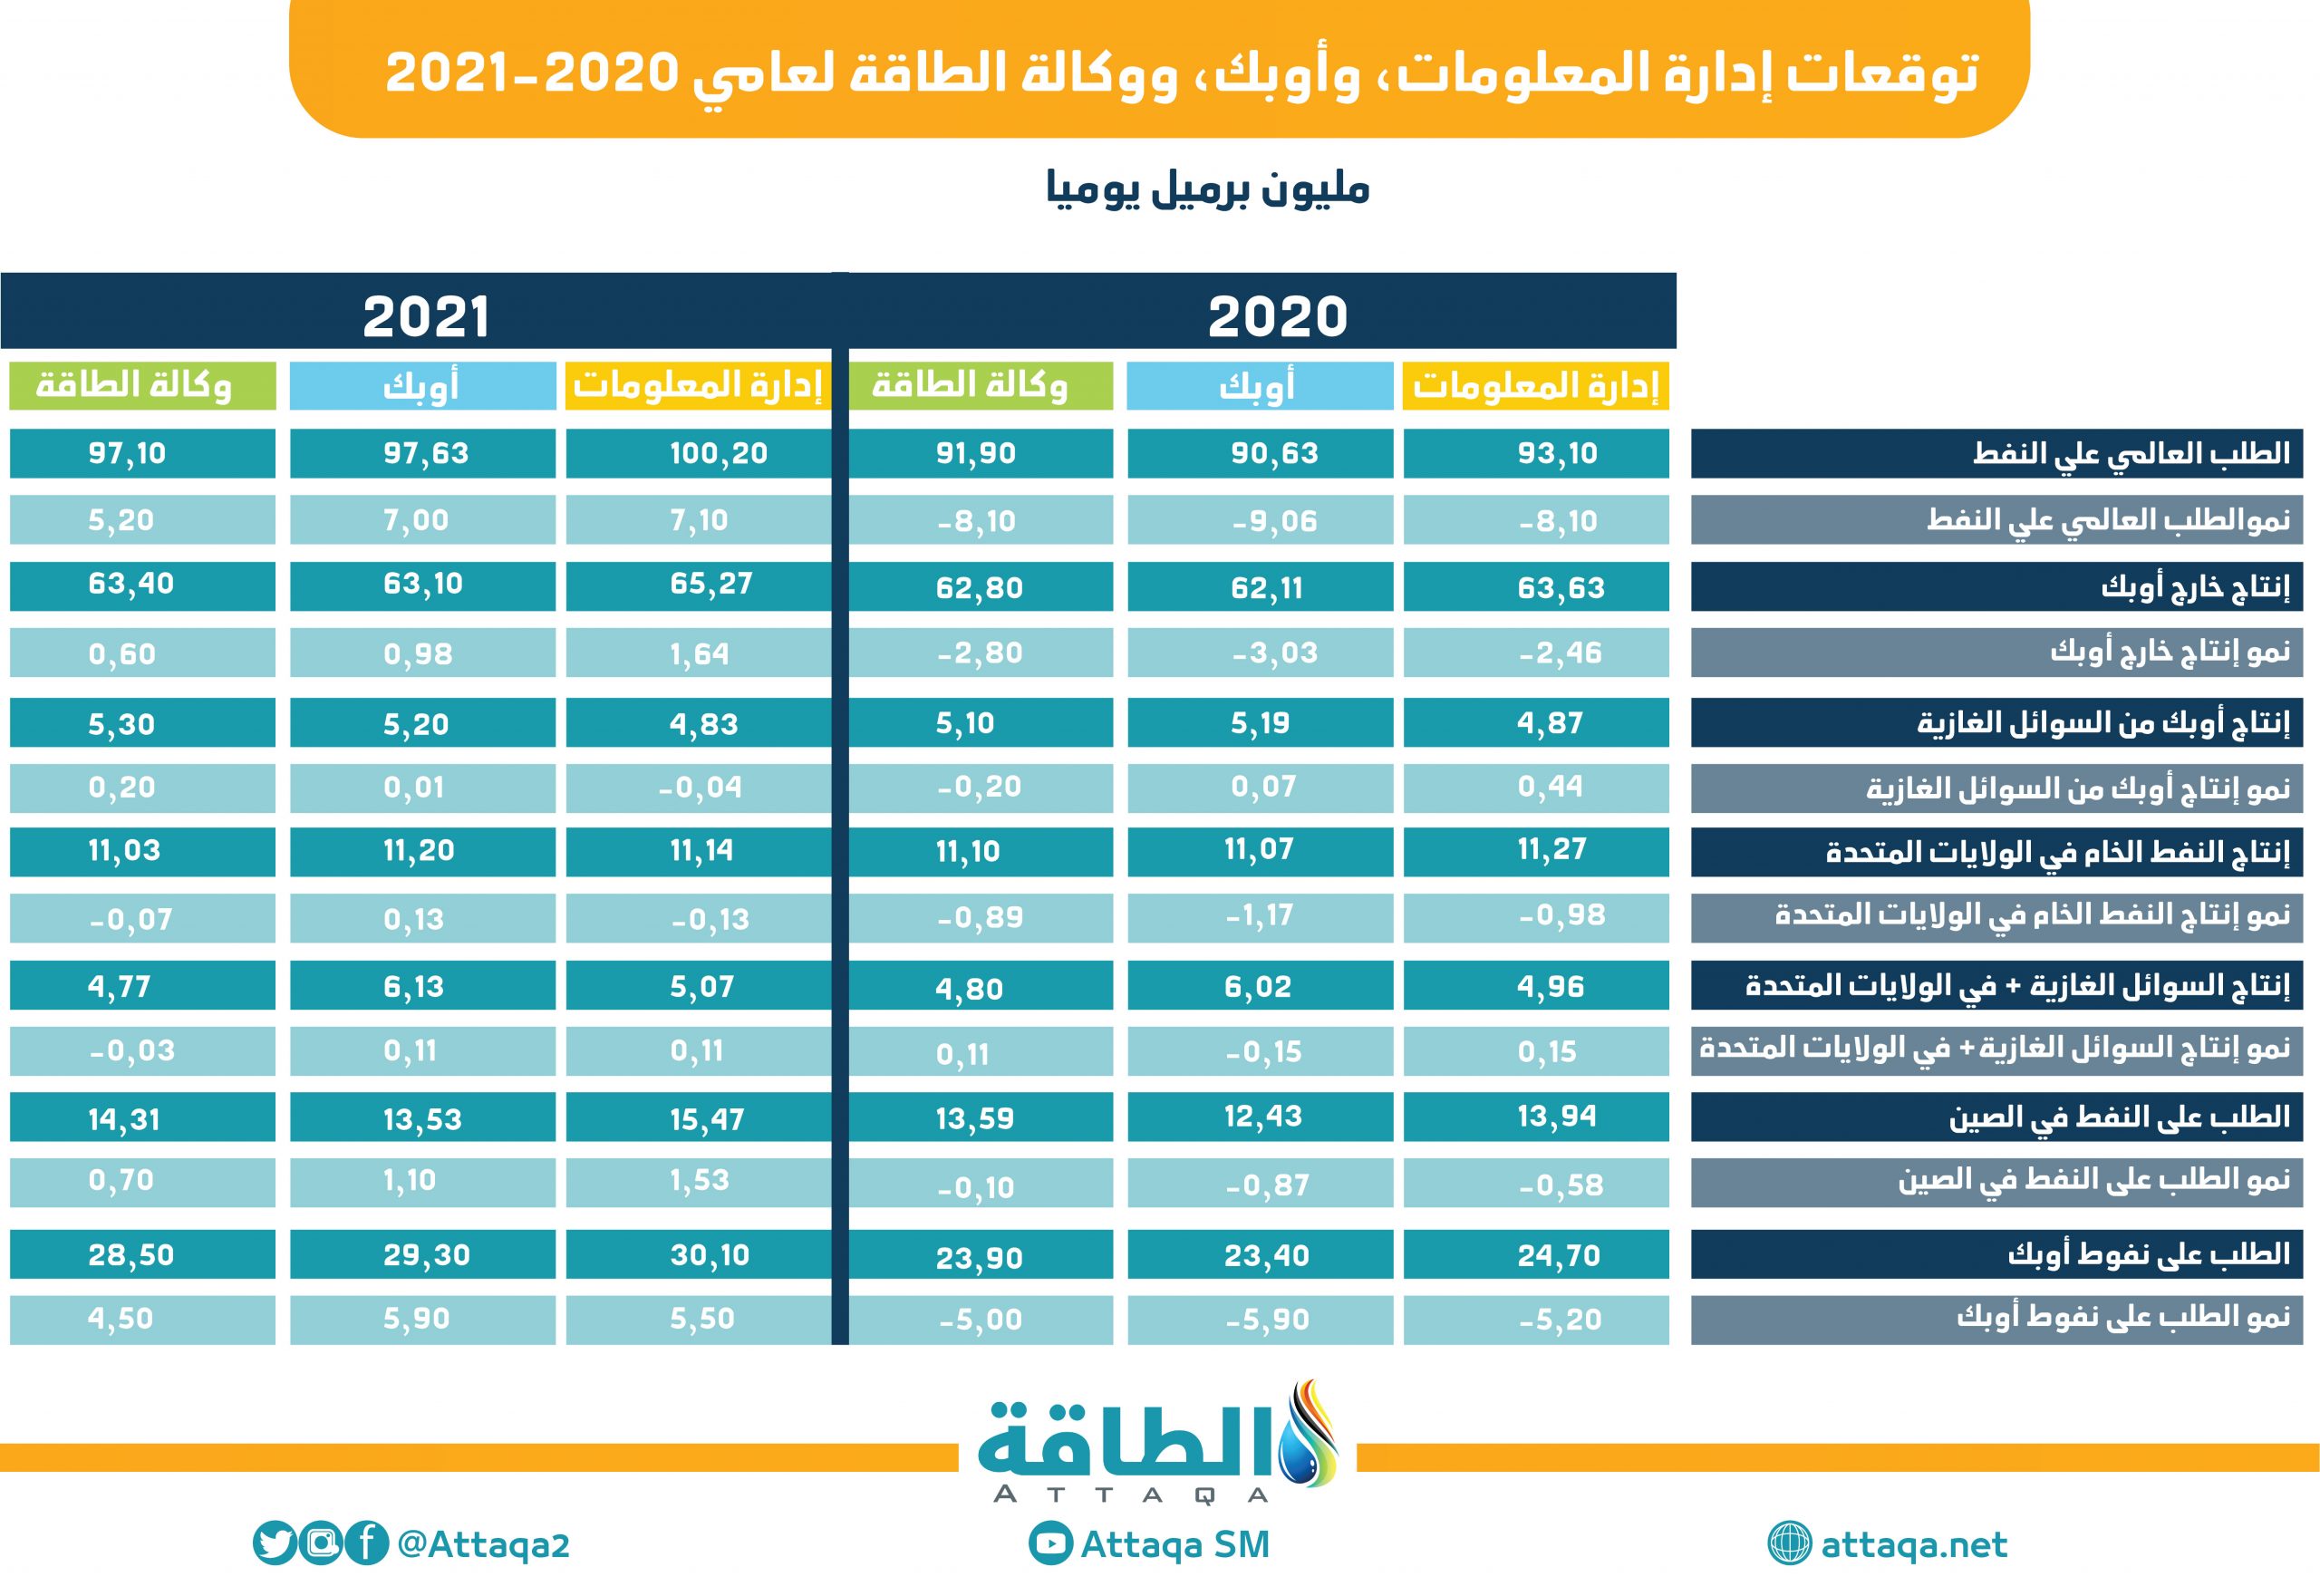 توقعات المنظمات المختلفة في شهر أغسطس 2020